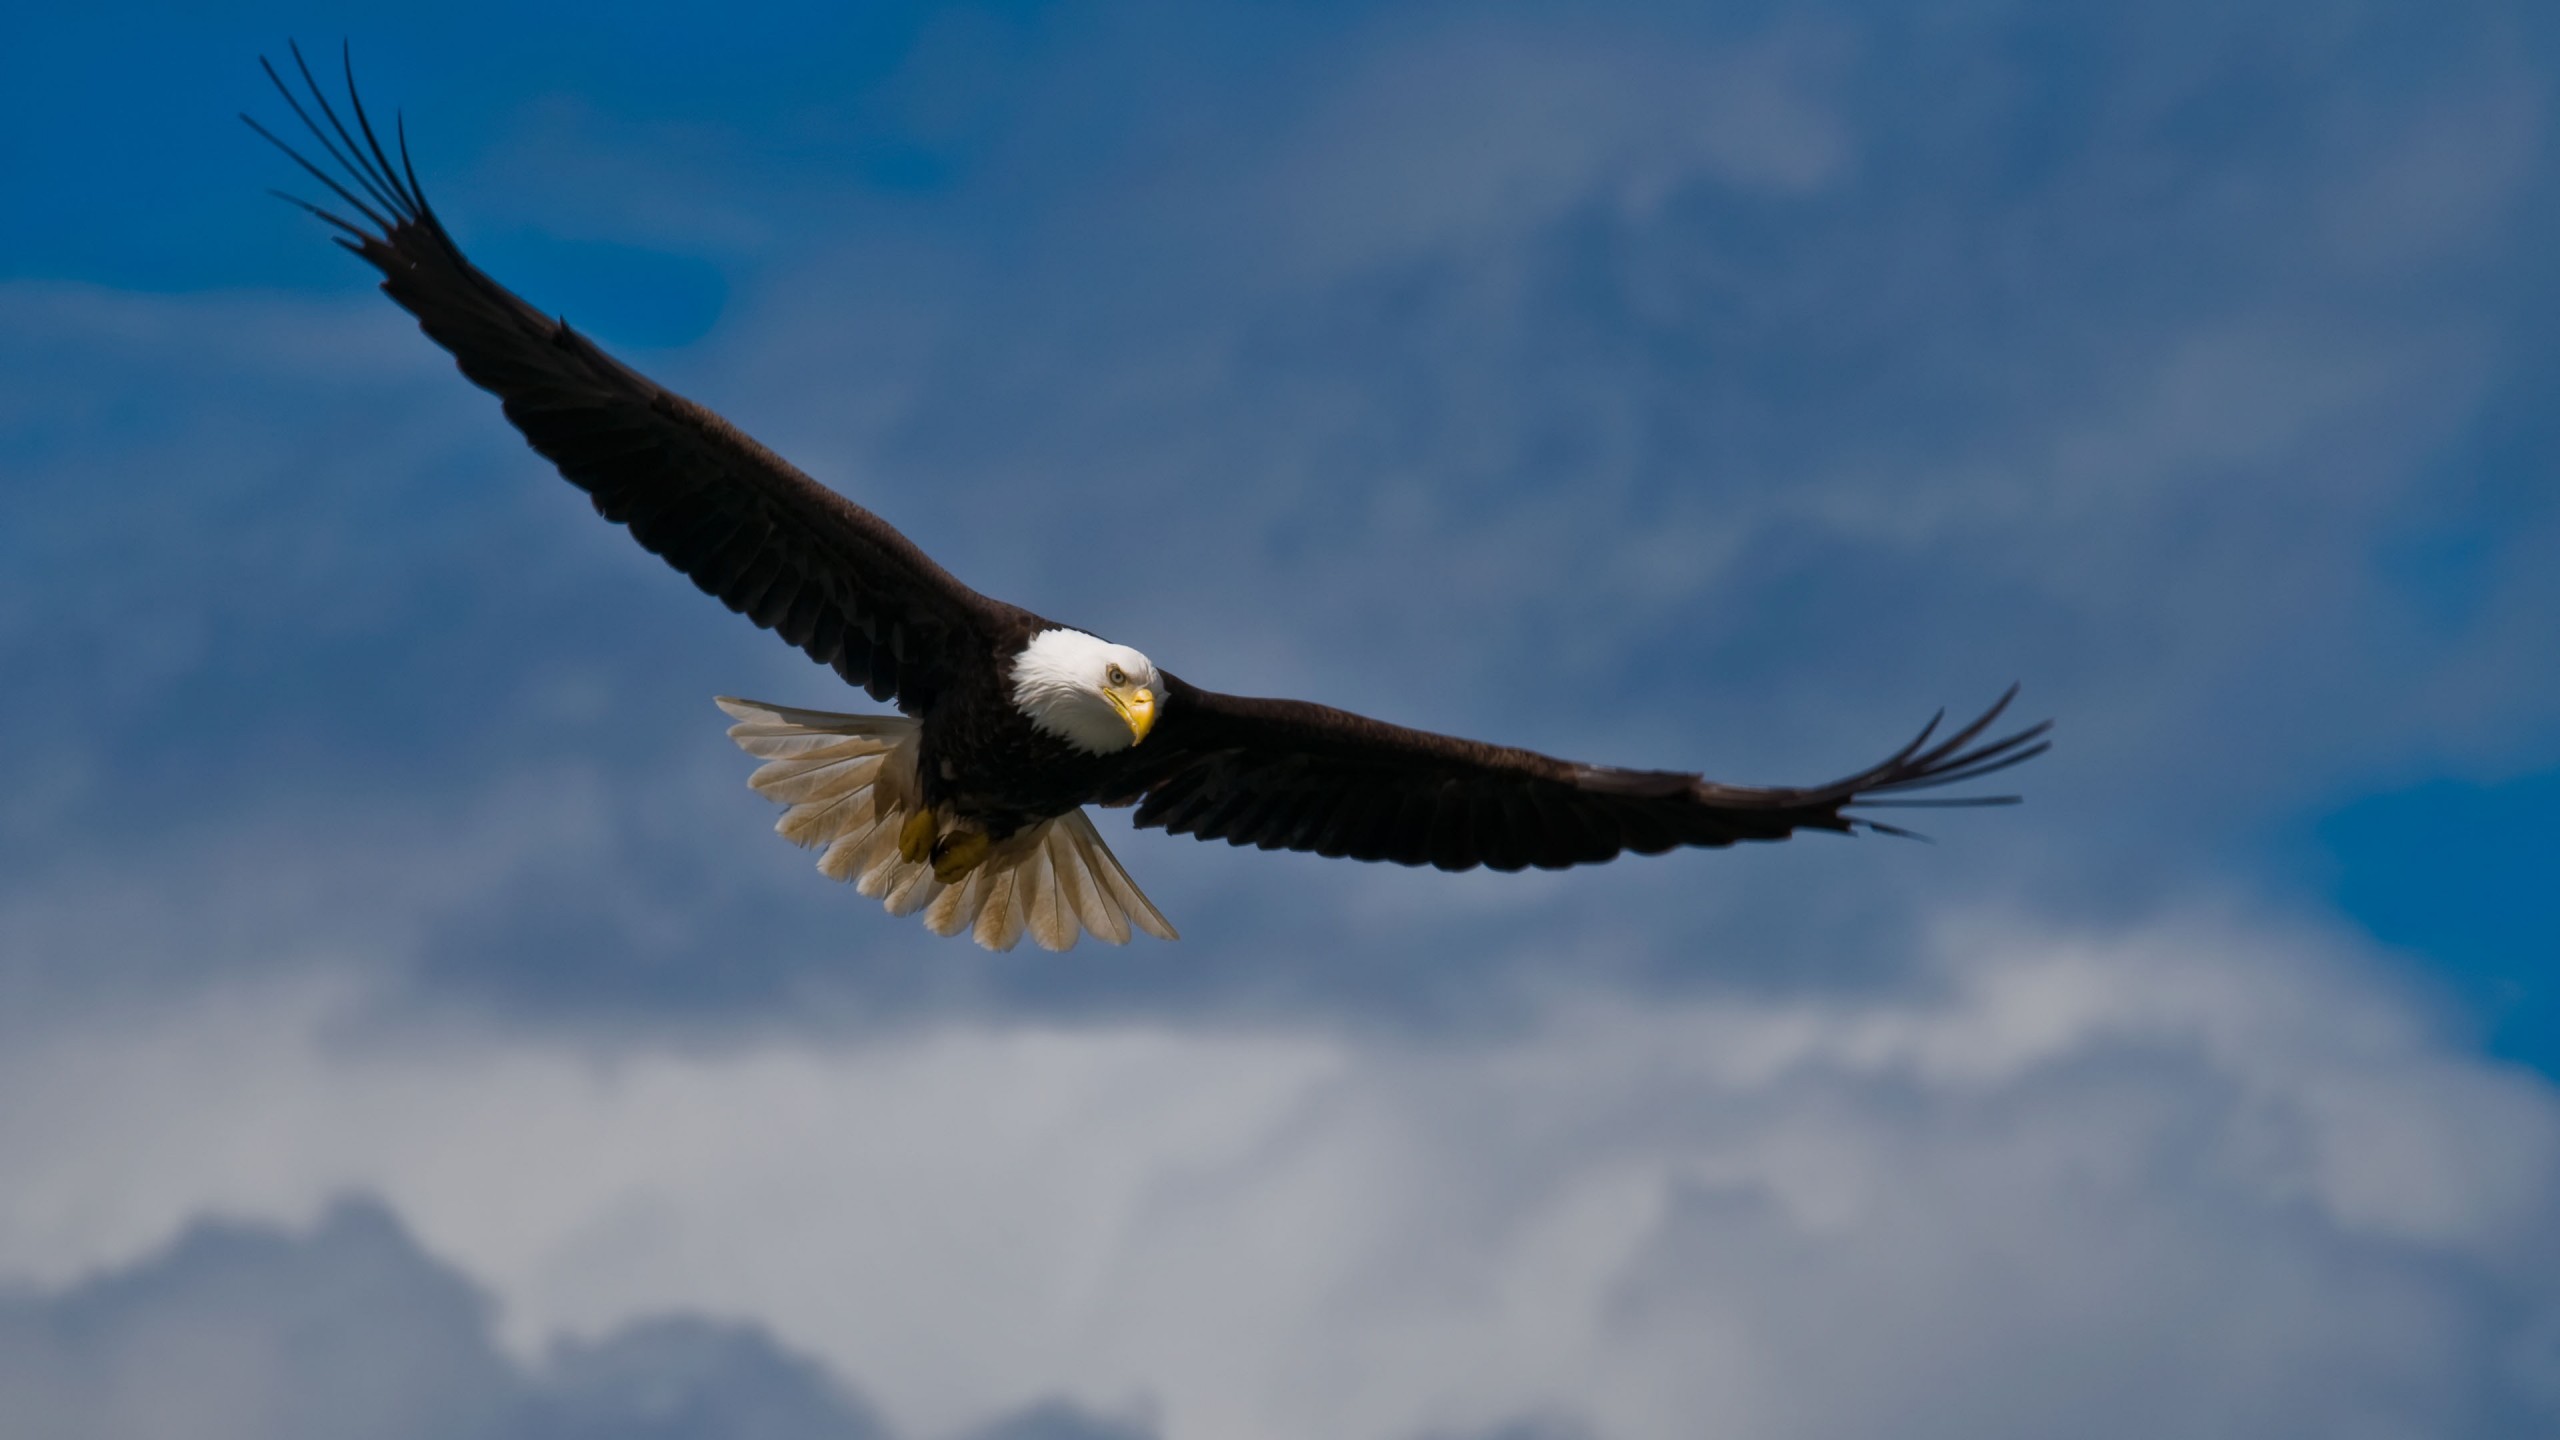 mobile desktop background hd pics of bald eagles flying